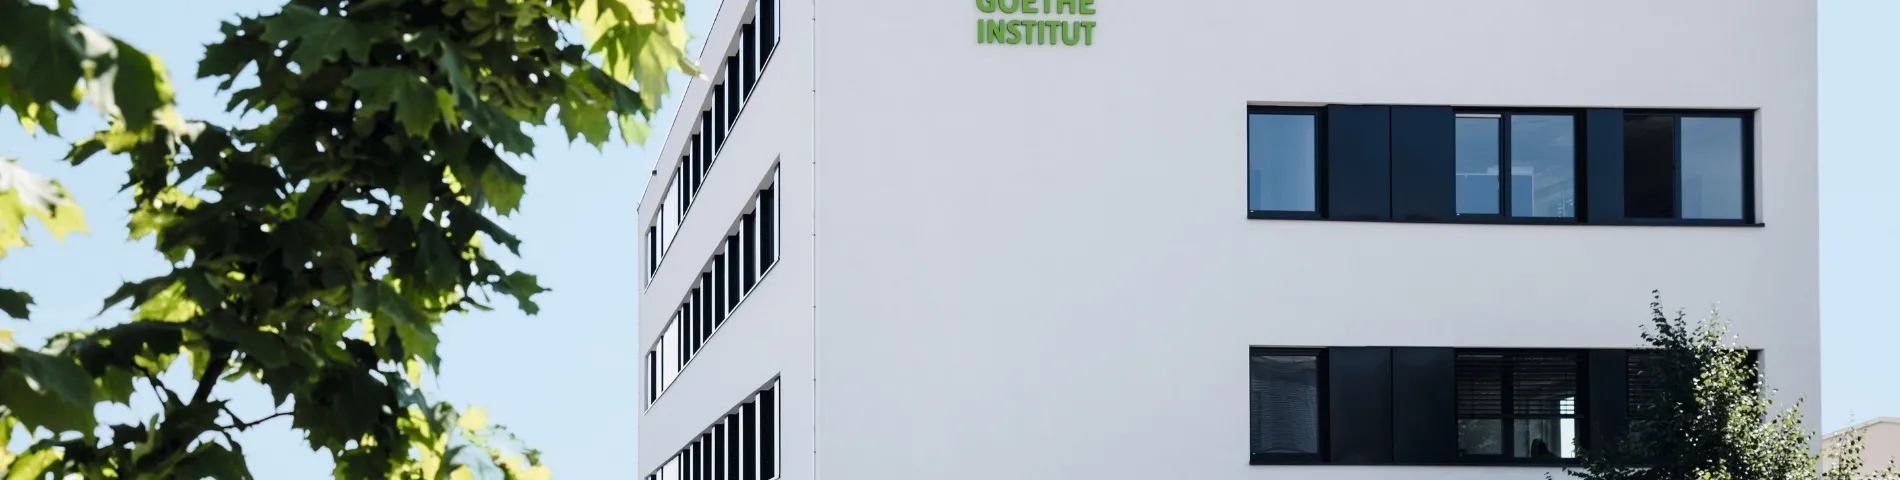 Goethe-Institut Bild 1